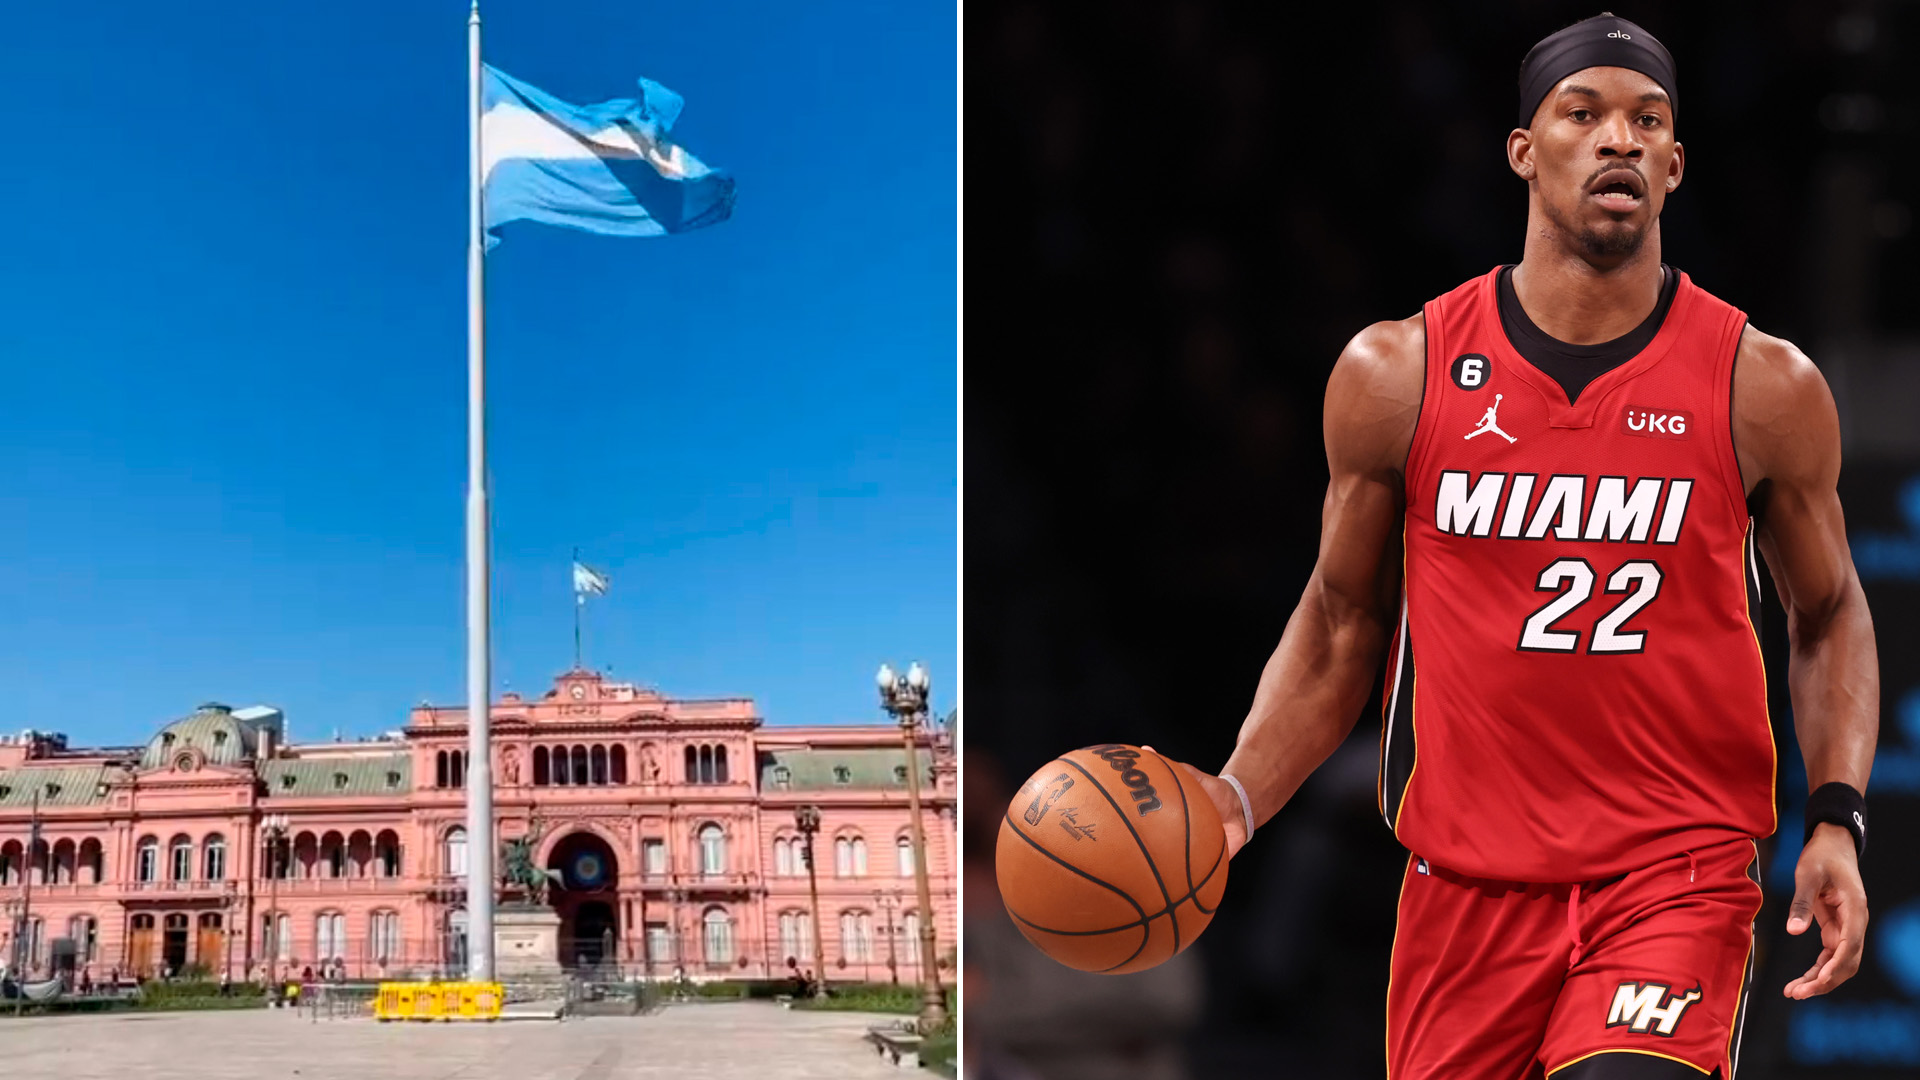 La estrella de la NBA que sorprendió a todos con su visita a Argentina tras quedar afuera del All Star Game